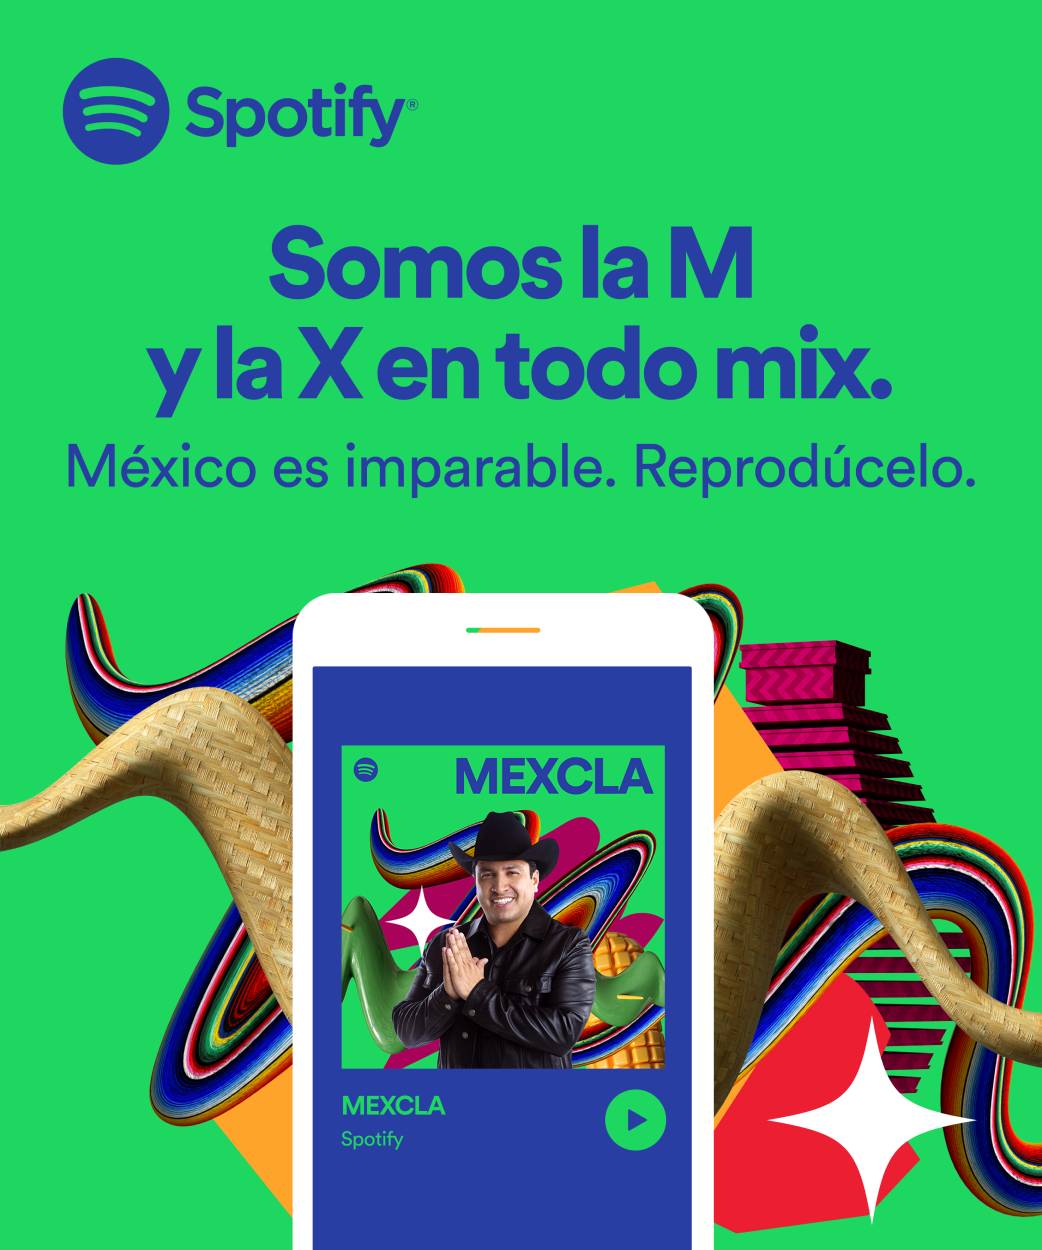 ¡La música mexicana la está rompiendo en Spotify!